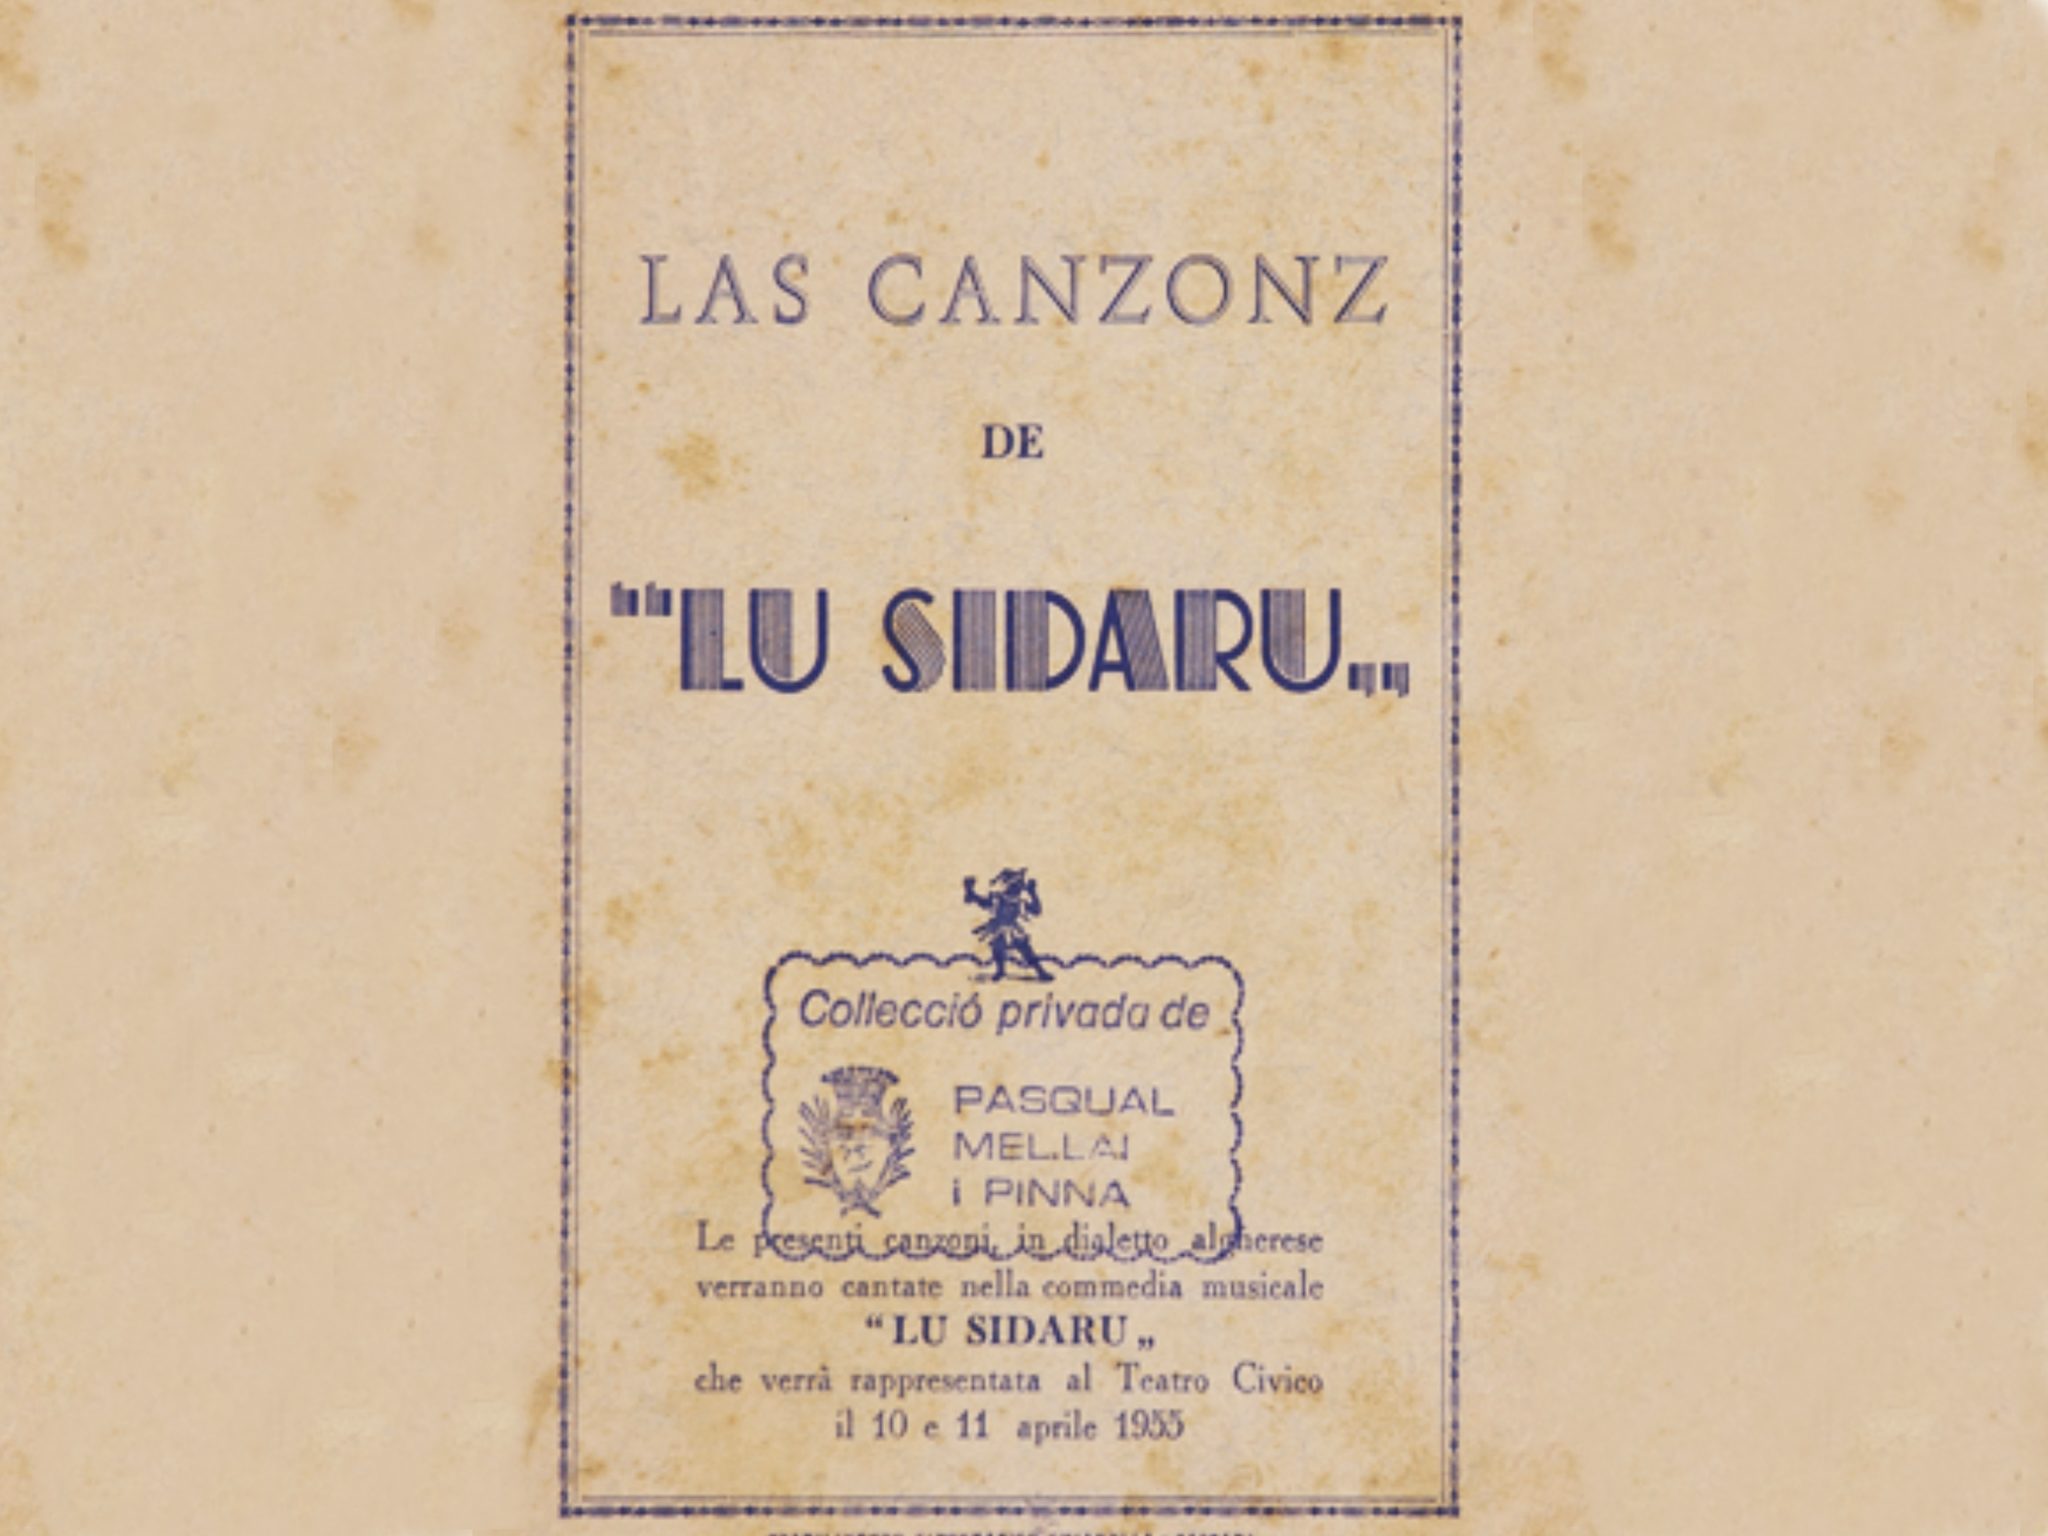 Frontespizio del libretto di canzoni in algherese della commedia “Lu Sidaru”, di Gavino Ballero, 1955. Collezione privata di Pasqual Mel-lai i Pinna.